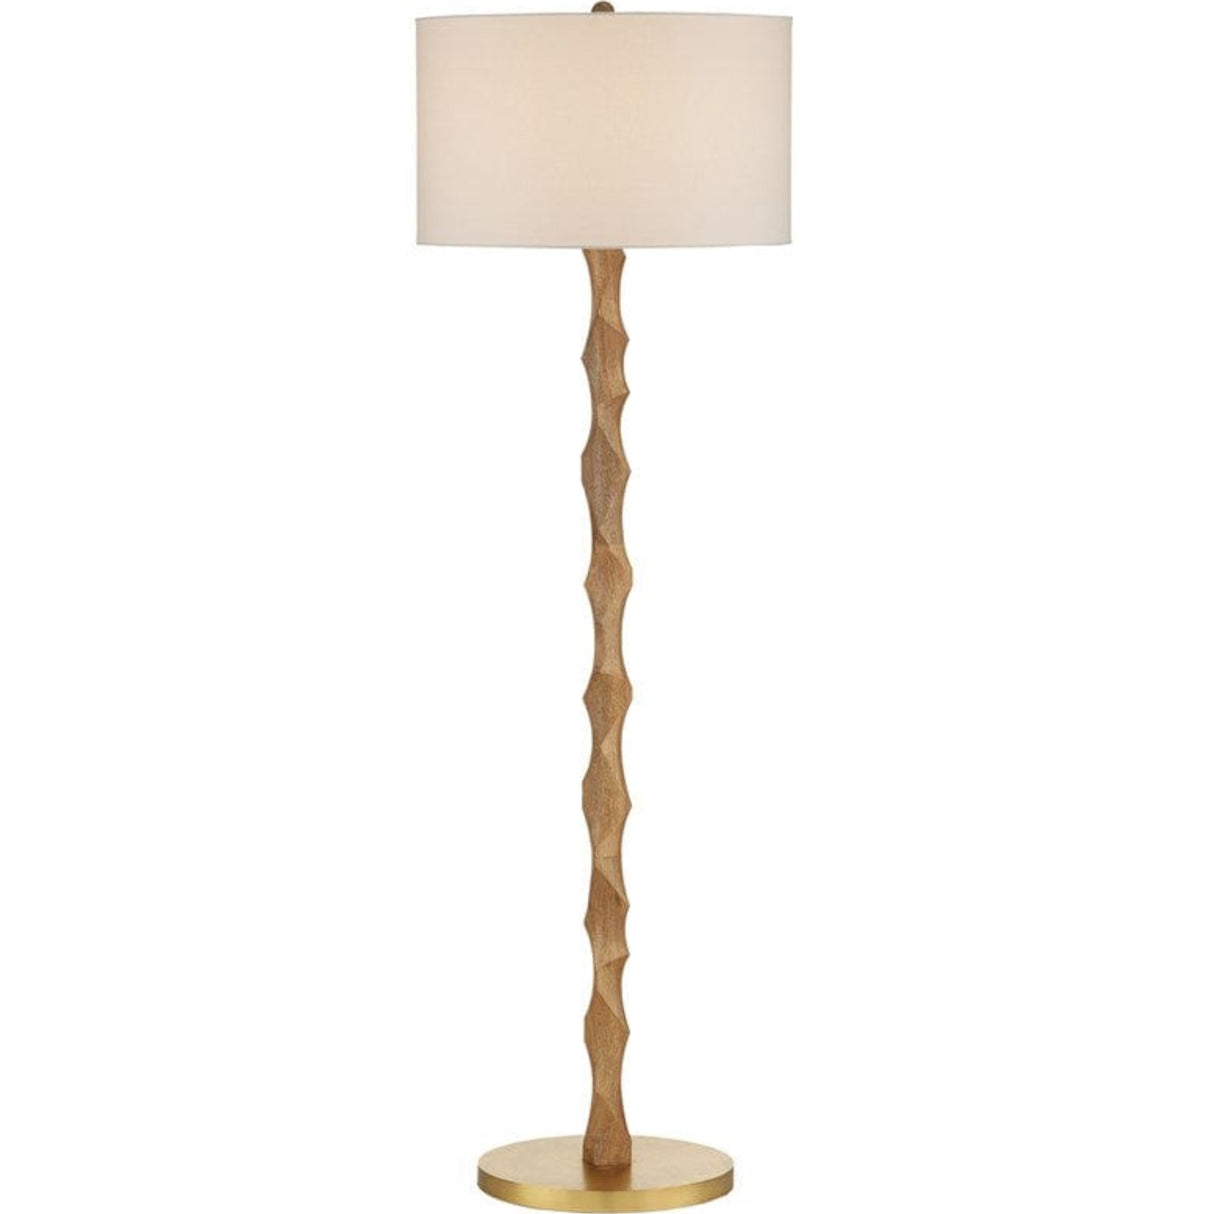 Currey & Company Sunbird Wood Floor Lamp Floor Lamp 8000-0135